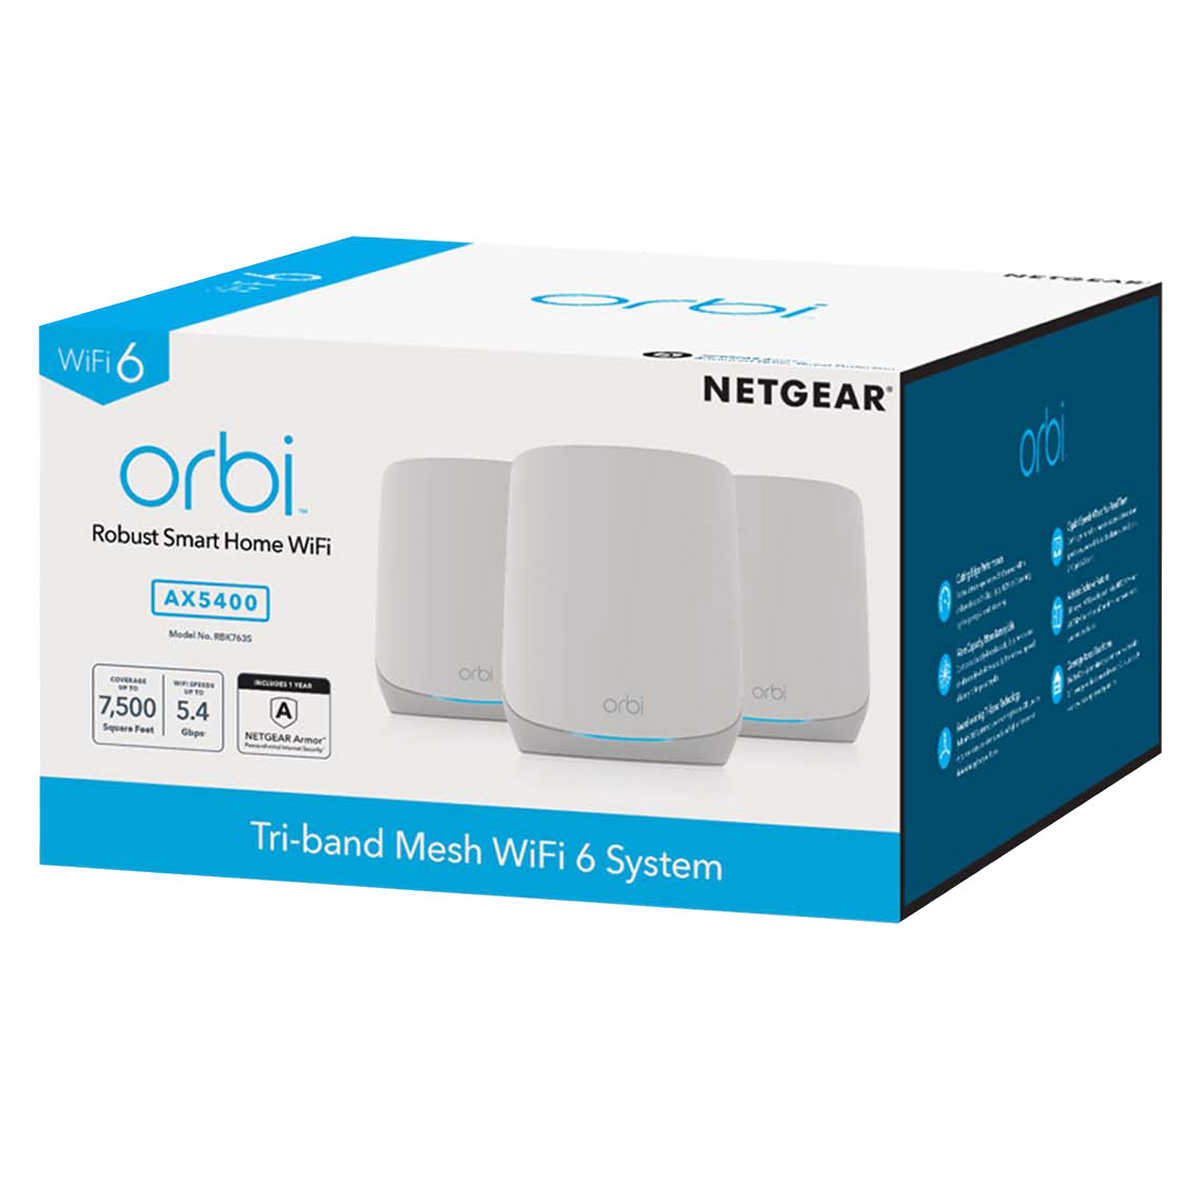 Netgear Orbi AX5400 WiFi 6 Mesh System, One Year Advanced Internet Security